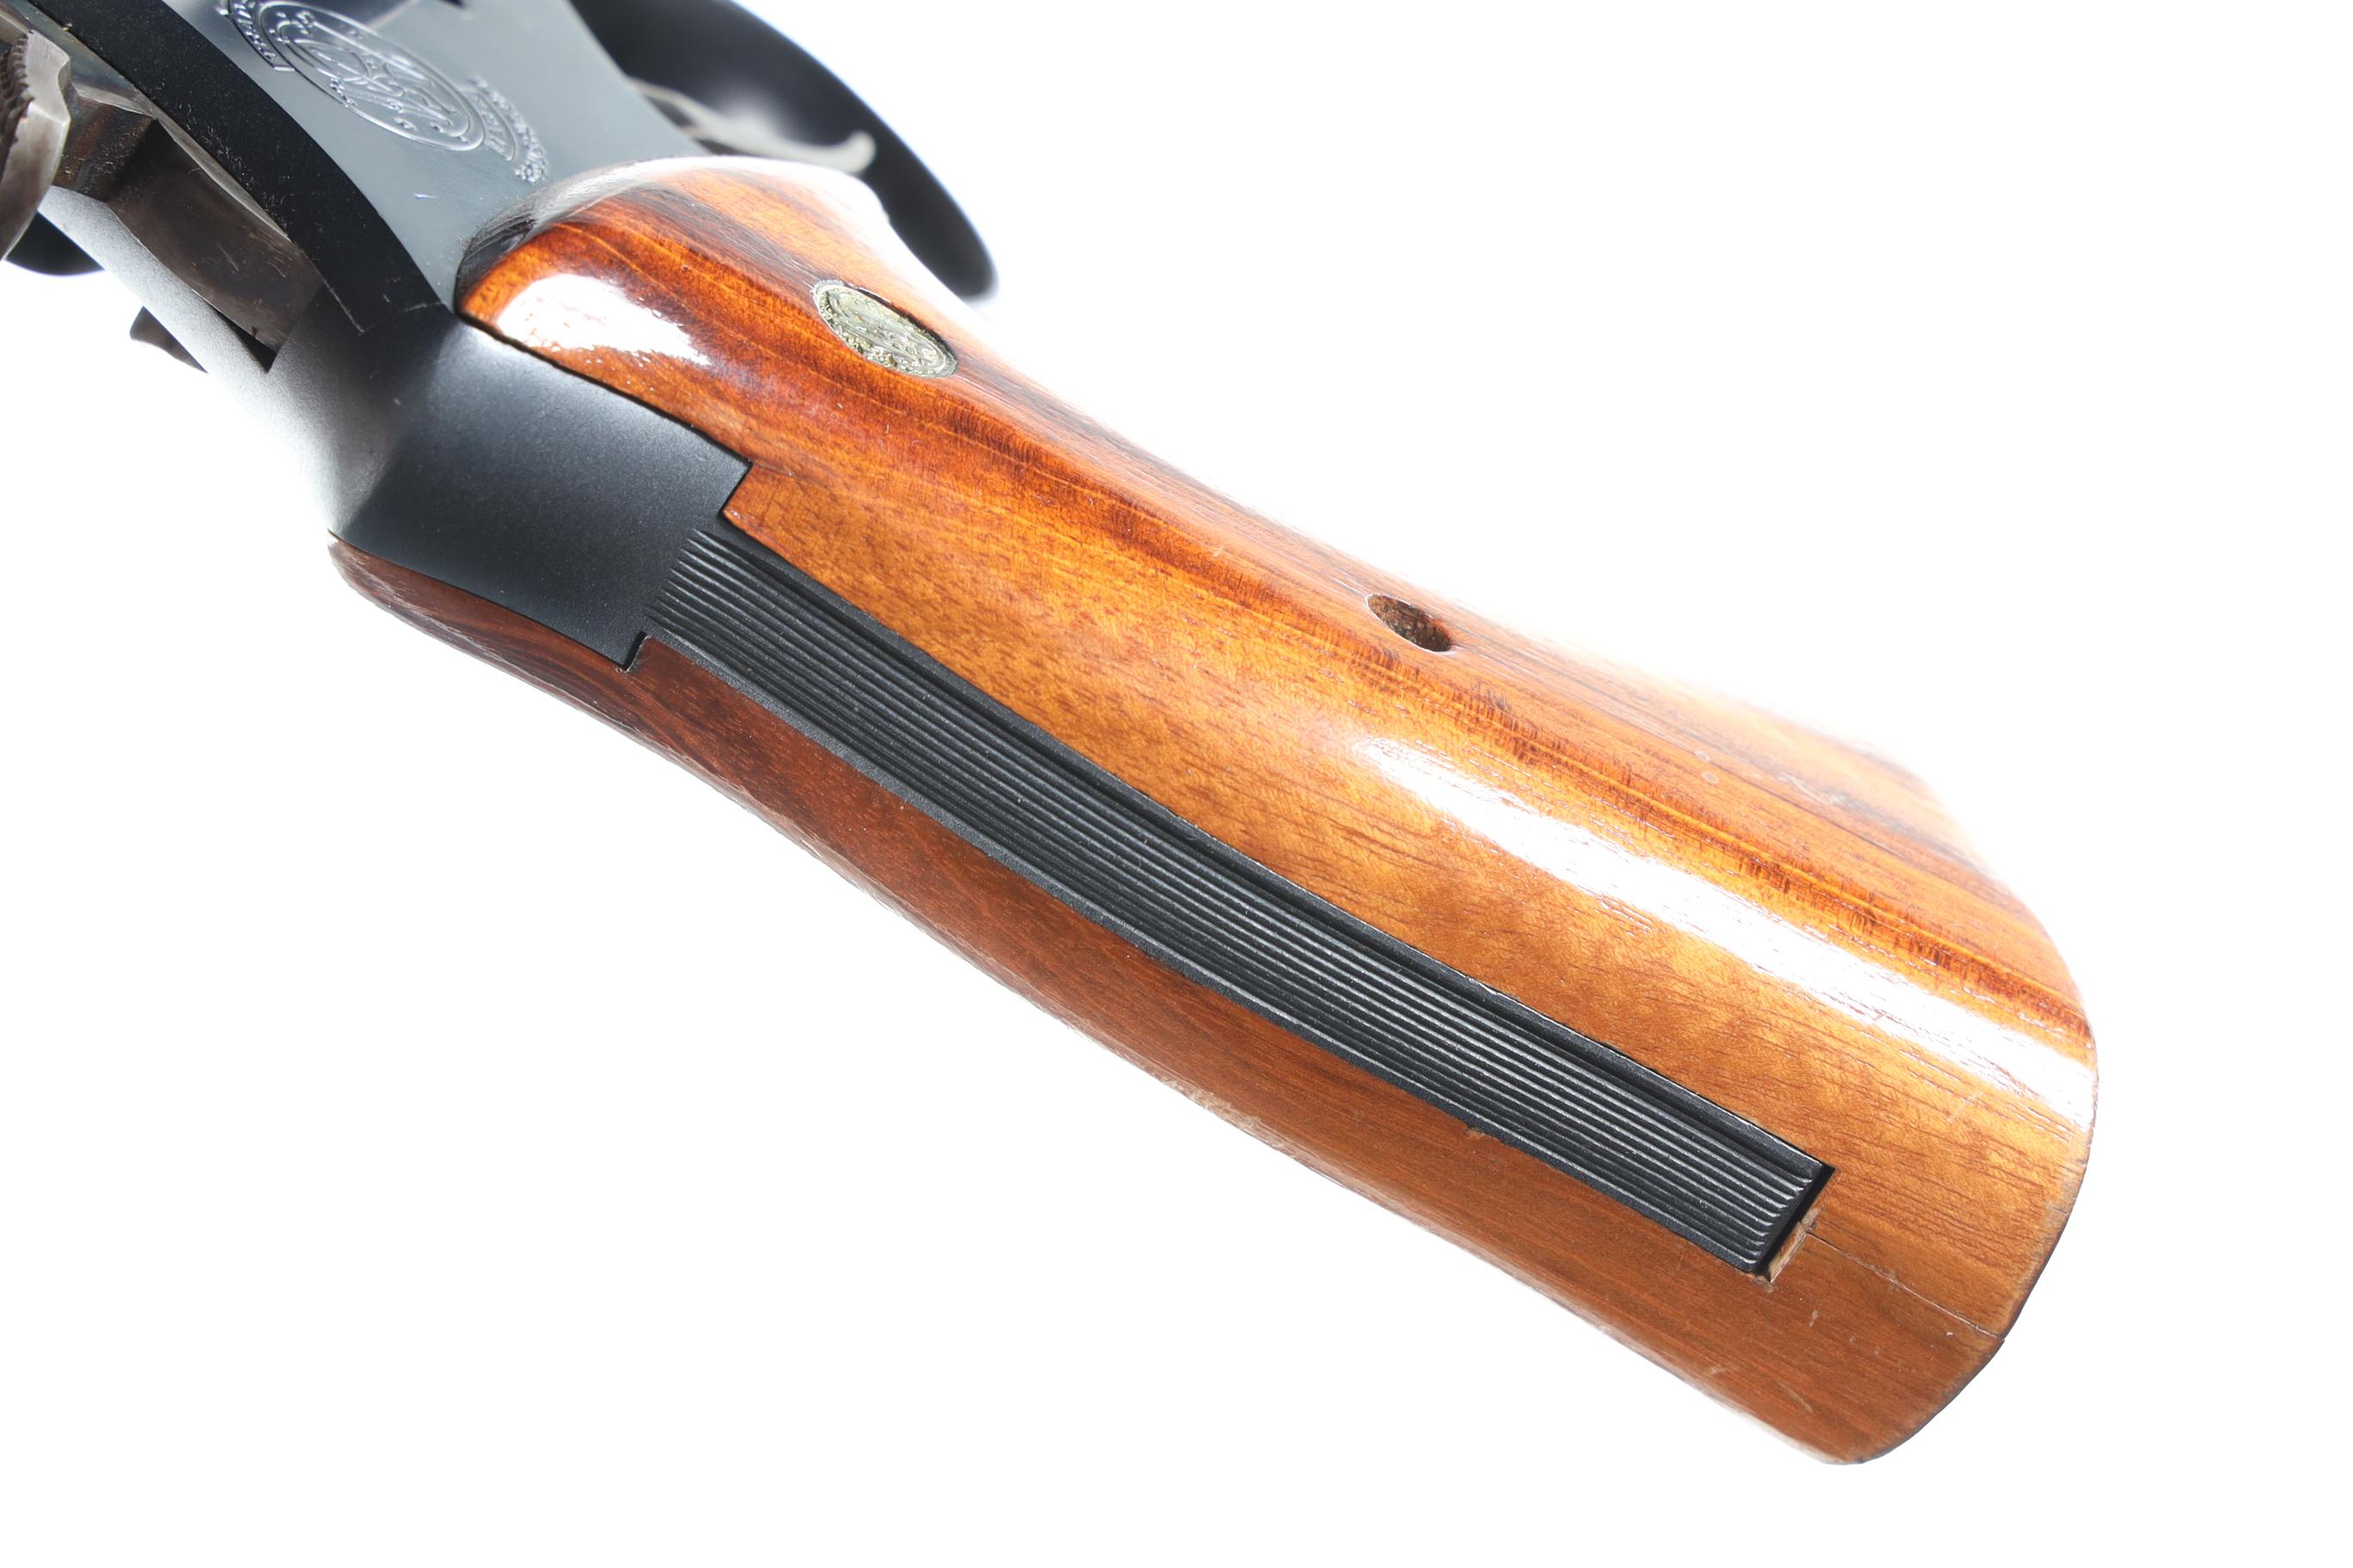 Smith & Wesson 28-2 Hwy Patrolman Revolver .357 mag